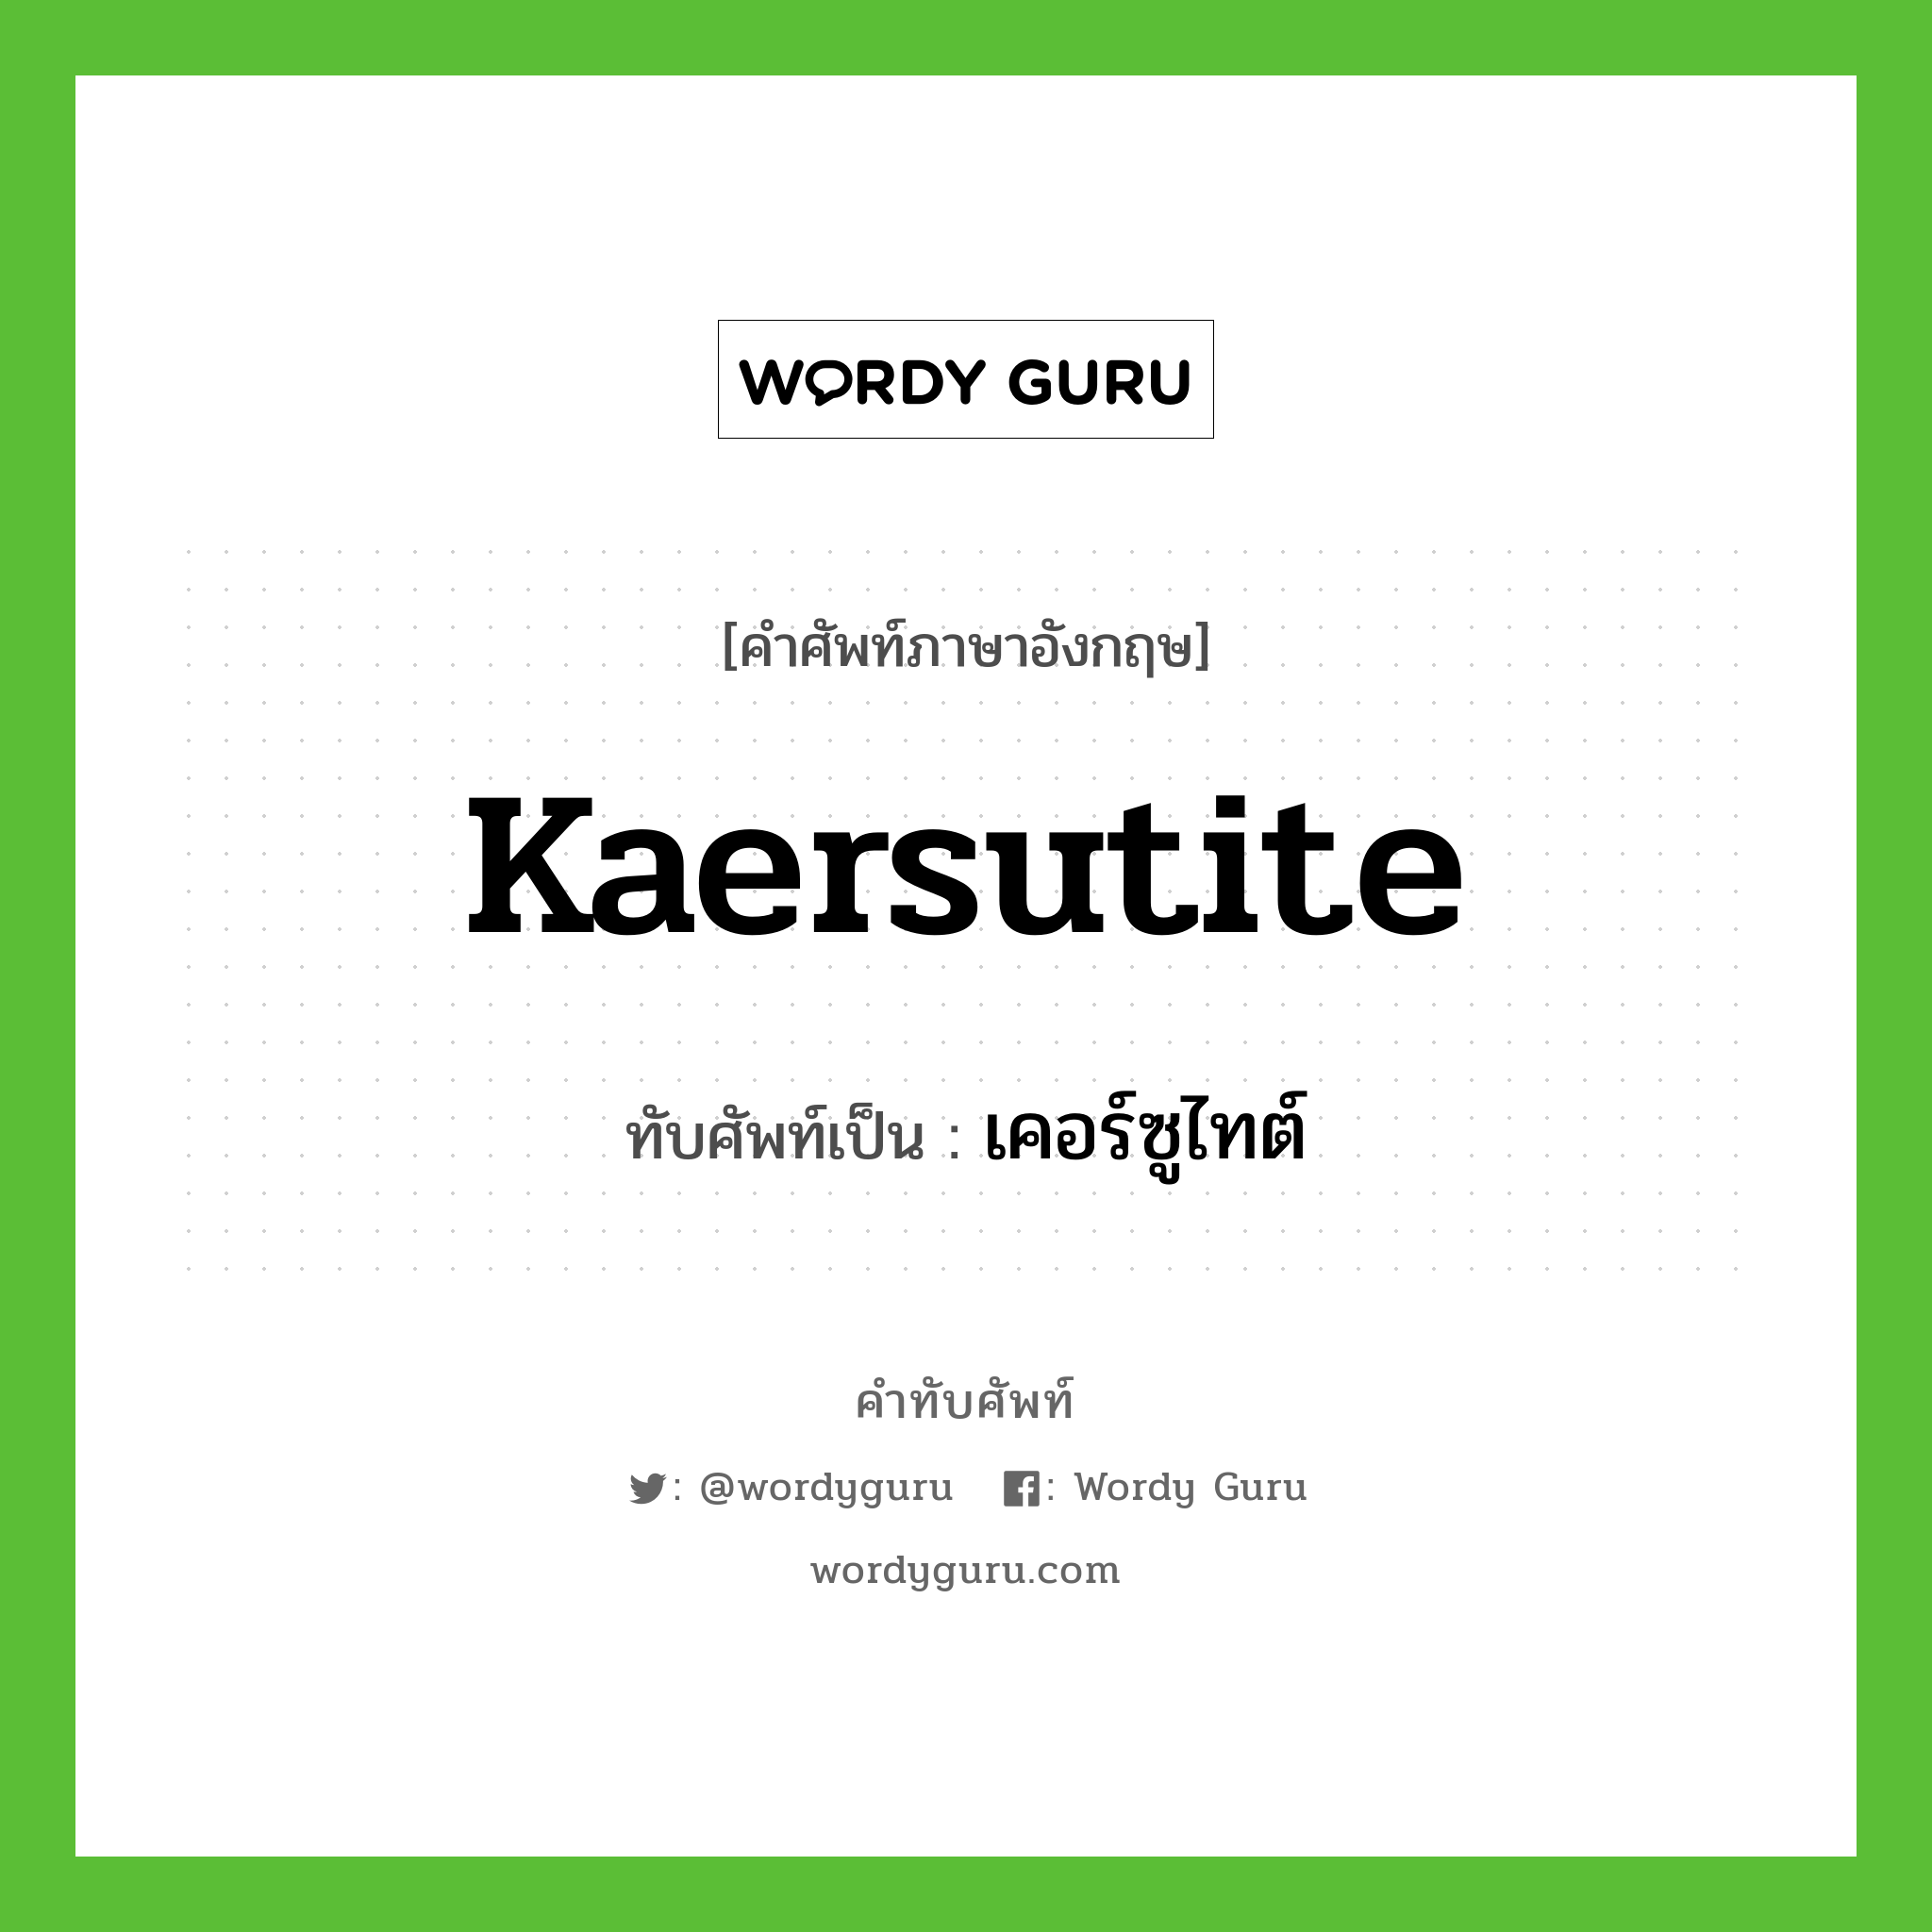 kaersutite เขียนเป็นคำไทยว่าอะไร?, คำศัพท์ภาษาอังกฤษ kaersutite ทับศัพท์เป็น เคอร์ซูไทต์